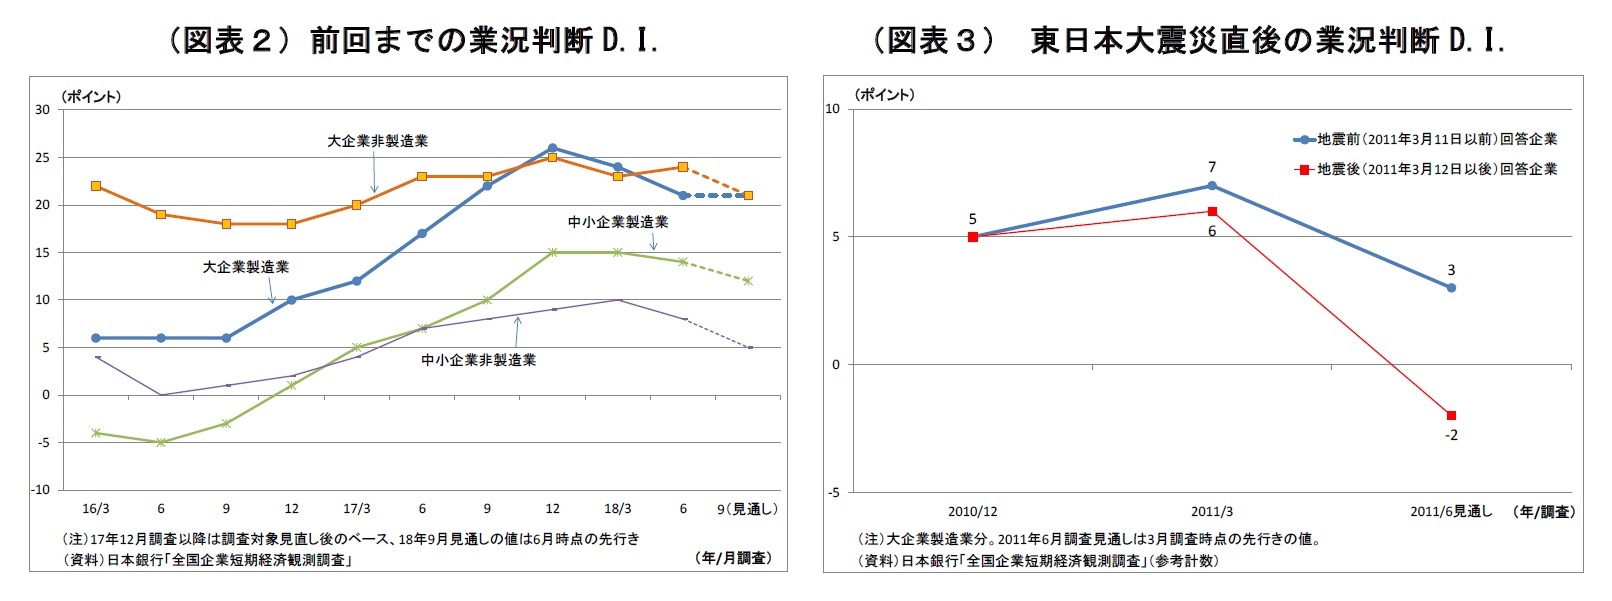 （図表２）前回までの業況判断D.I./（図表３） 東日本大震災直後の業況判断D.I.